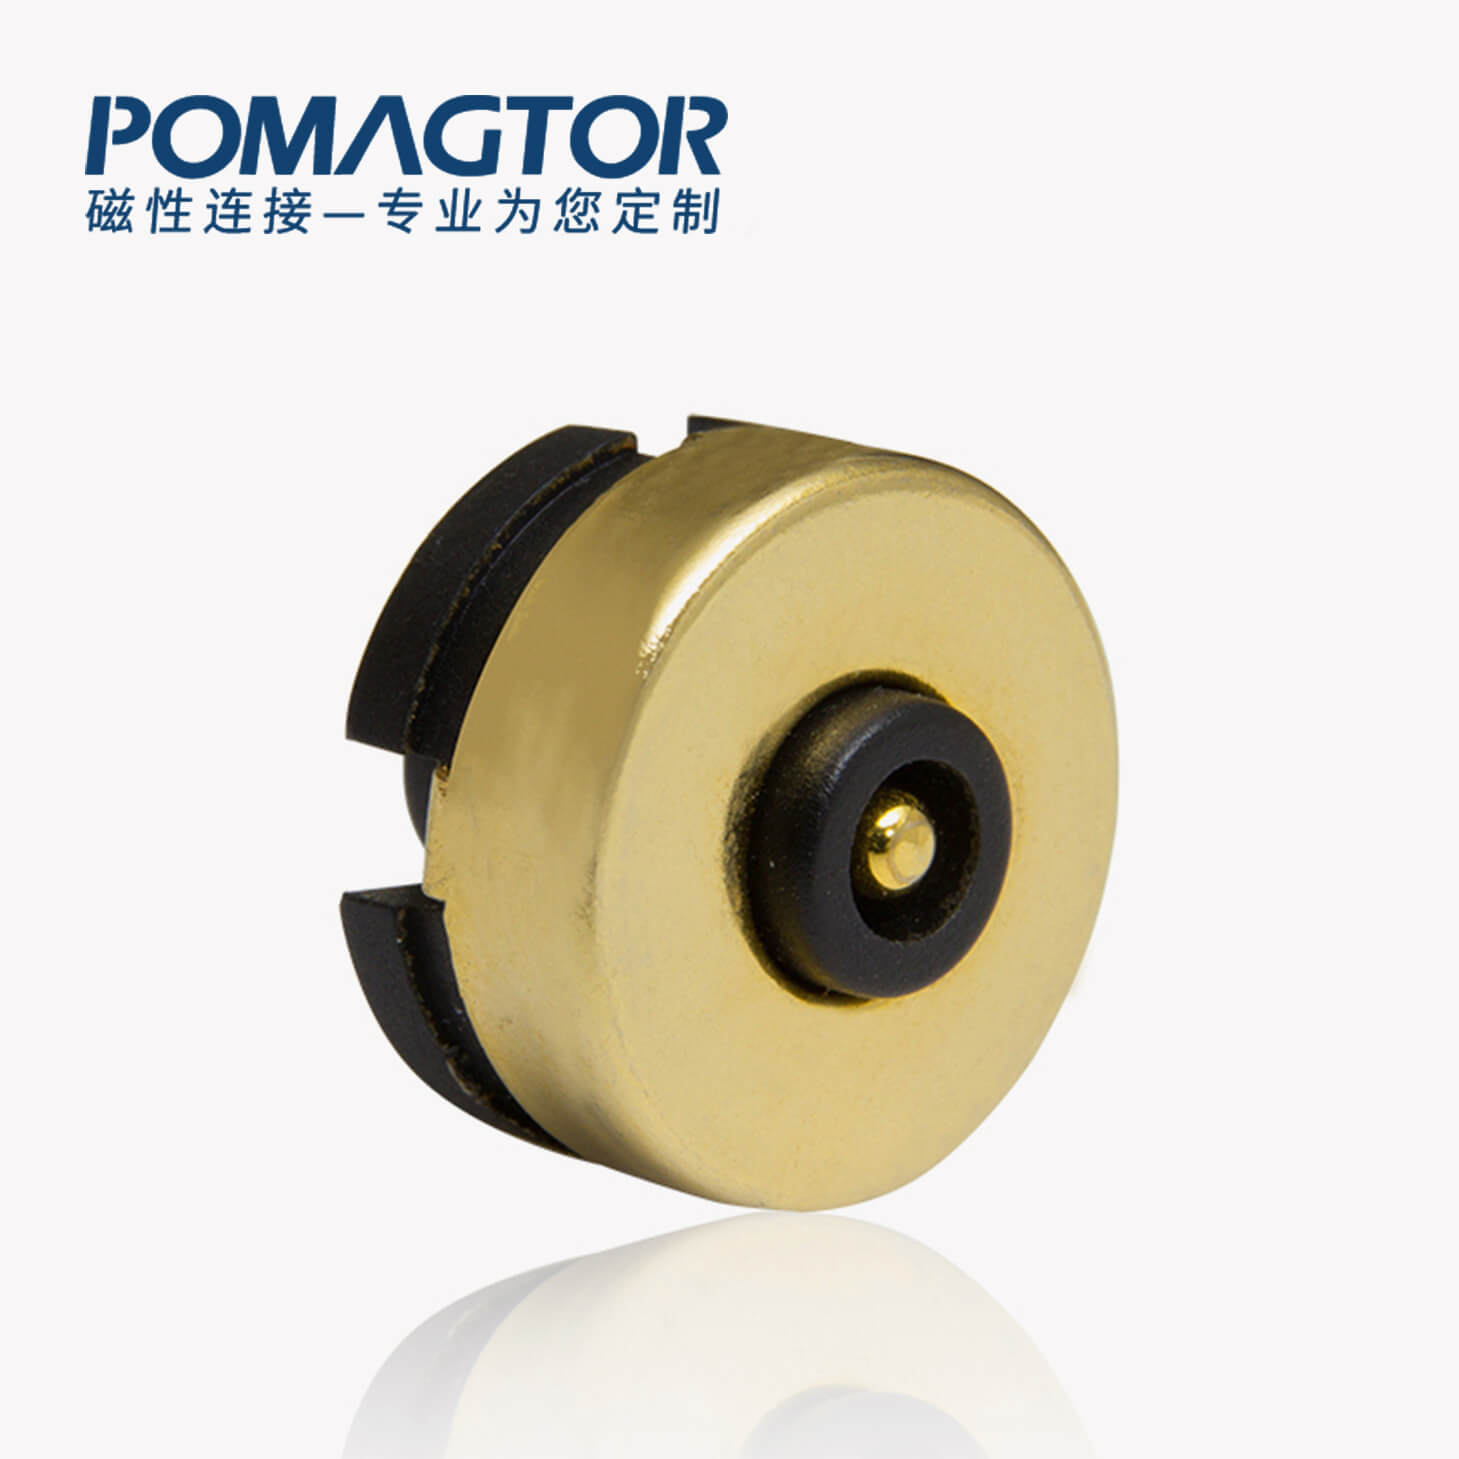 磁吸连接器 圆形磁性系列：2PIN，电镀黄铜Au10u，电压20V，电流3.5A，工作温度-30°~85°